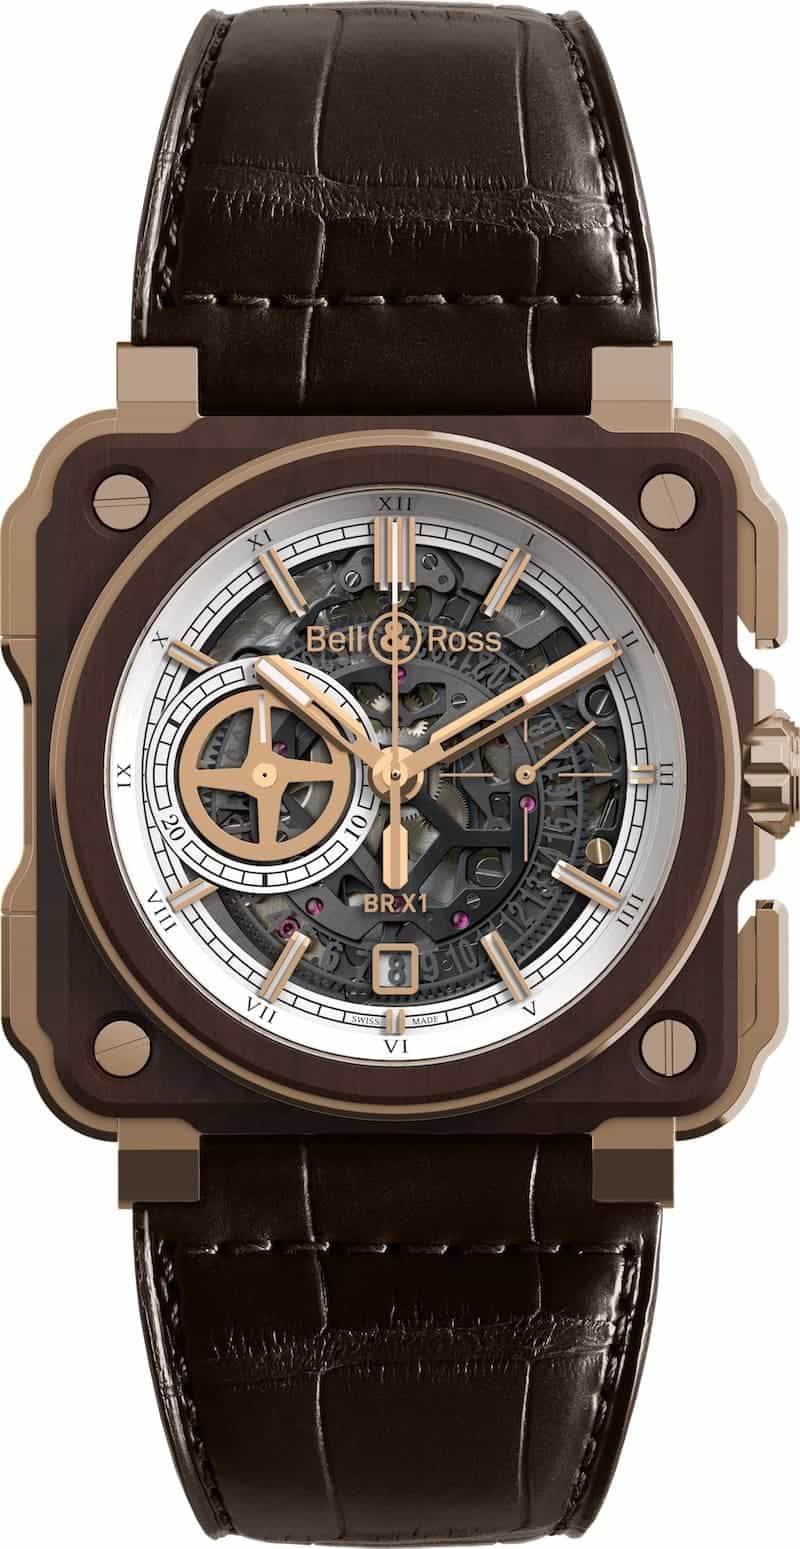 Bell & Ross nos deleita con su nueva colección de relojes de lujo “Instrument de Marine” – Elegantes y únicos